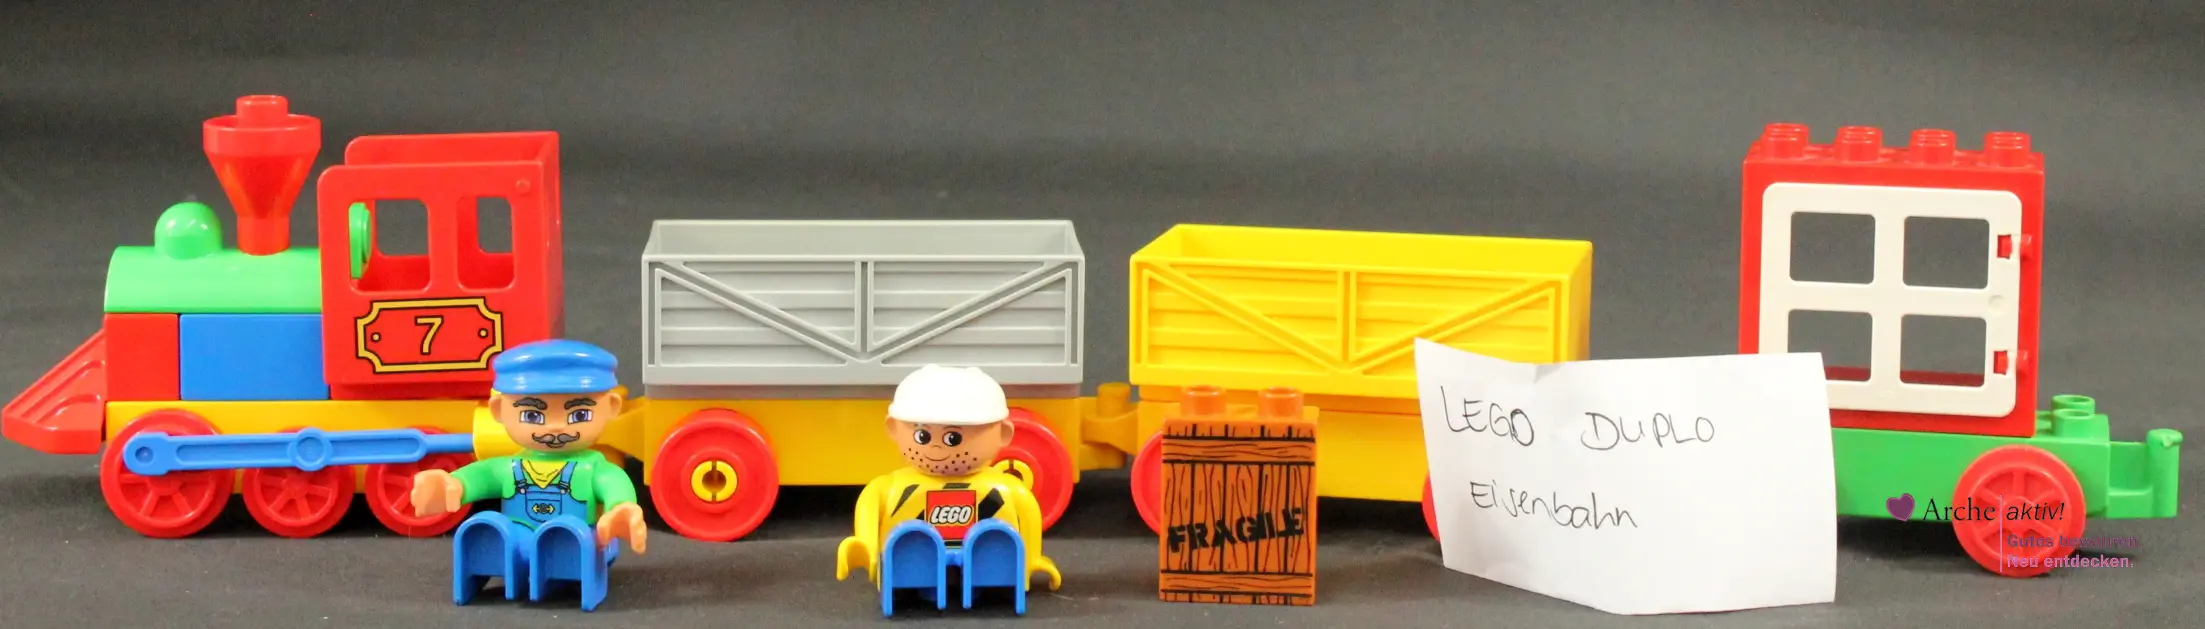 Lego Duplo Zug mit 3 Waggons und Figuren, gebraucht